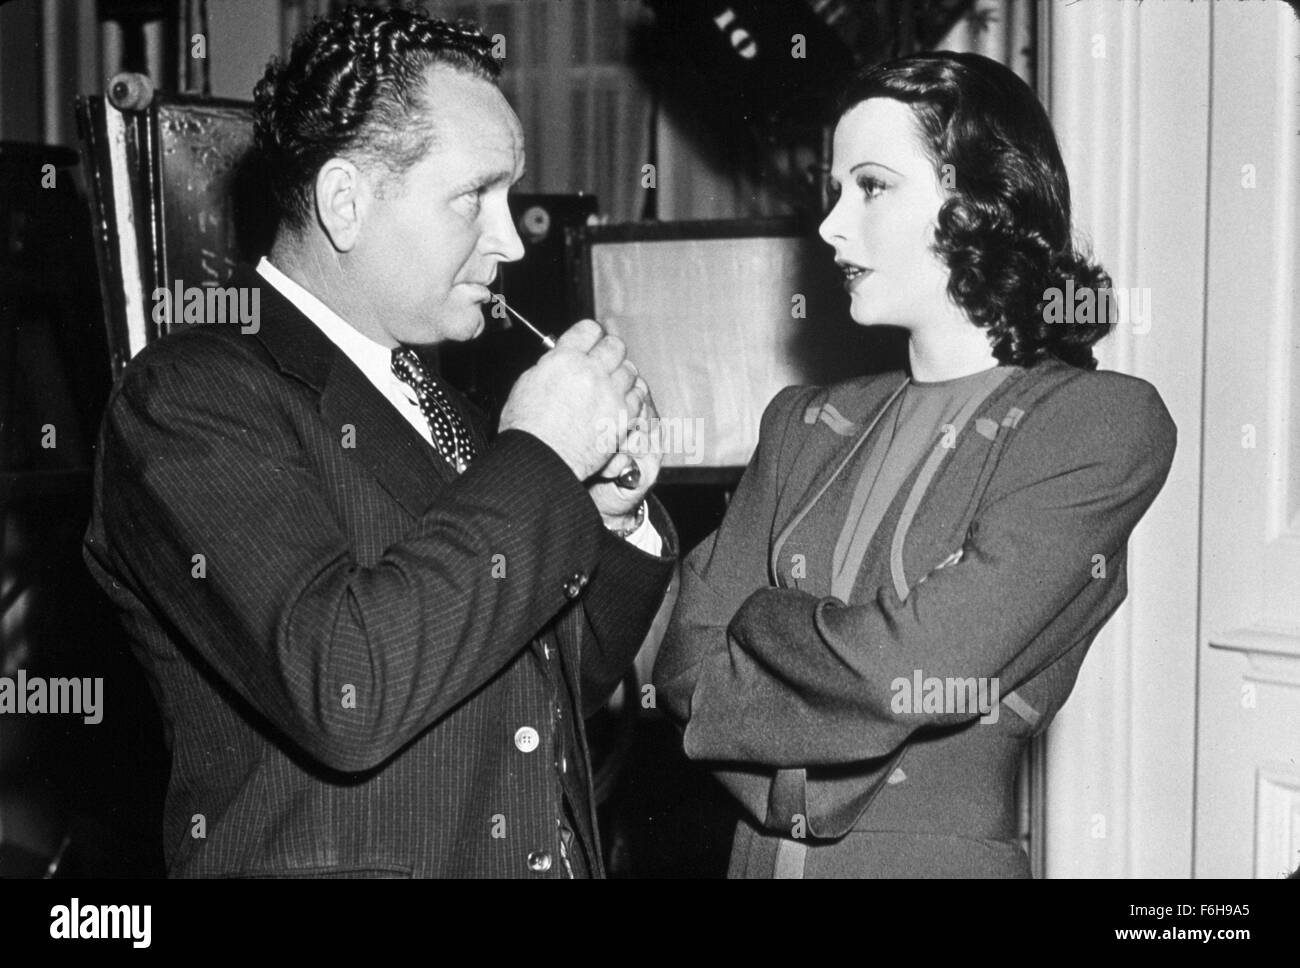 1940, el título de la película: Aprovecho esta mujer, Director: Frank BORZAGE, Studio: MGM, Foto: Frank BORZAGE. (Crédito de la imagen: SNAP). Foto de stock